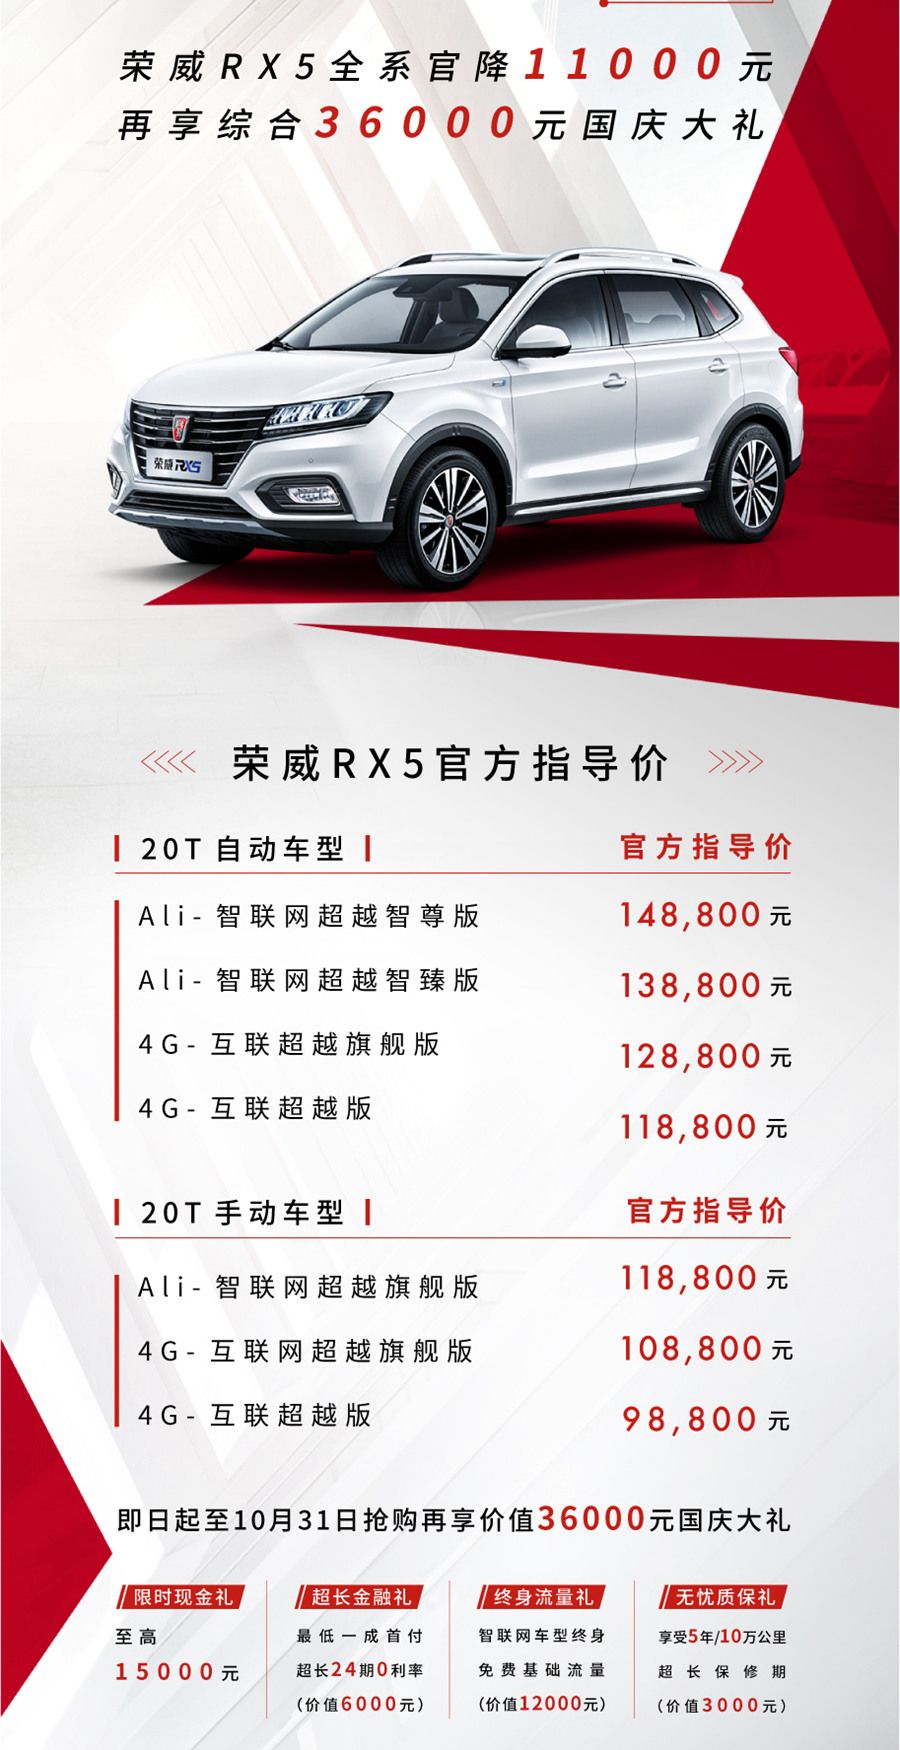 官方指导价13.88万 荣威RX5新增车型上市 